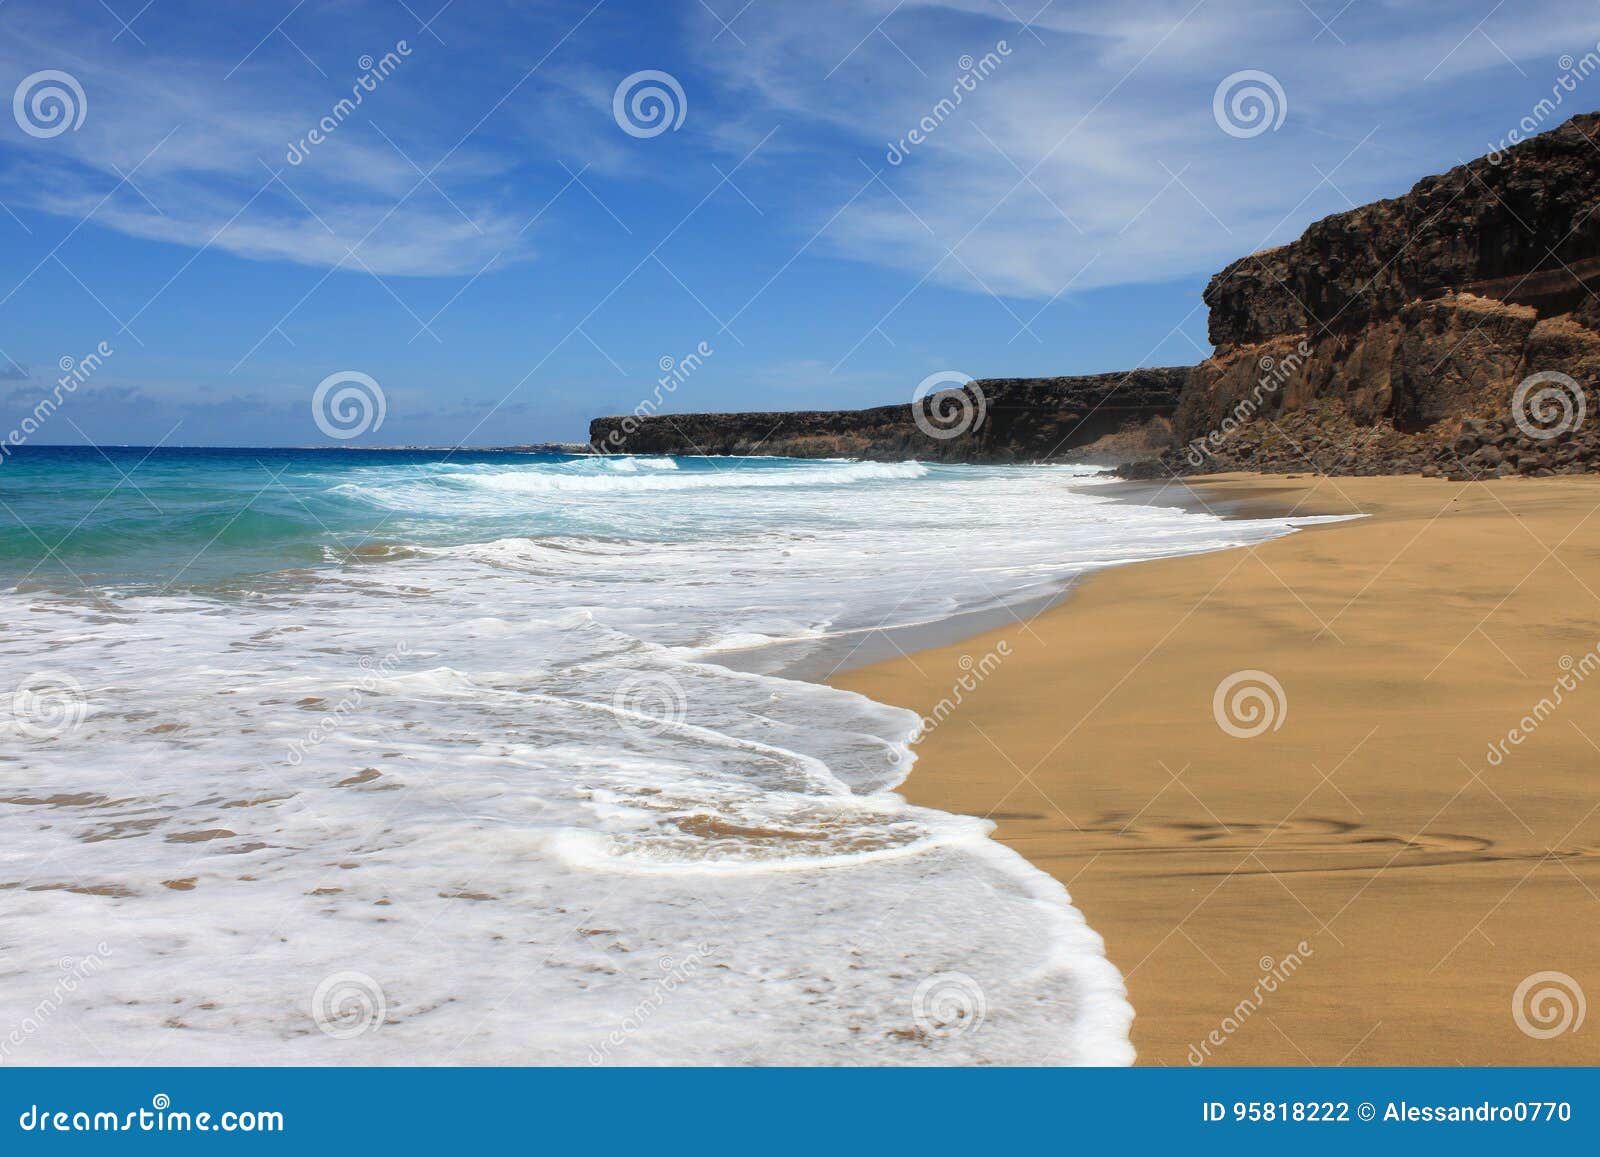 playa de la escalera in fuerteventura